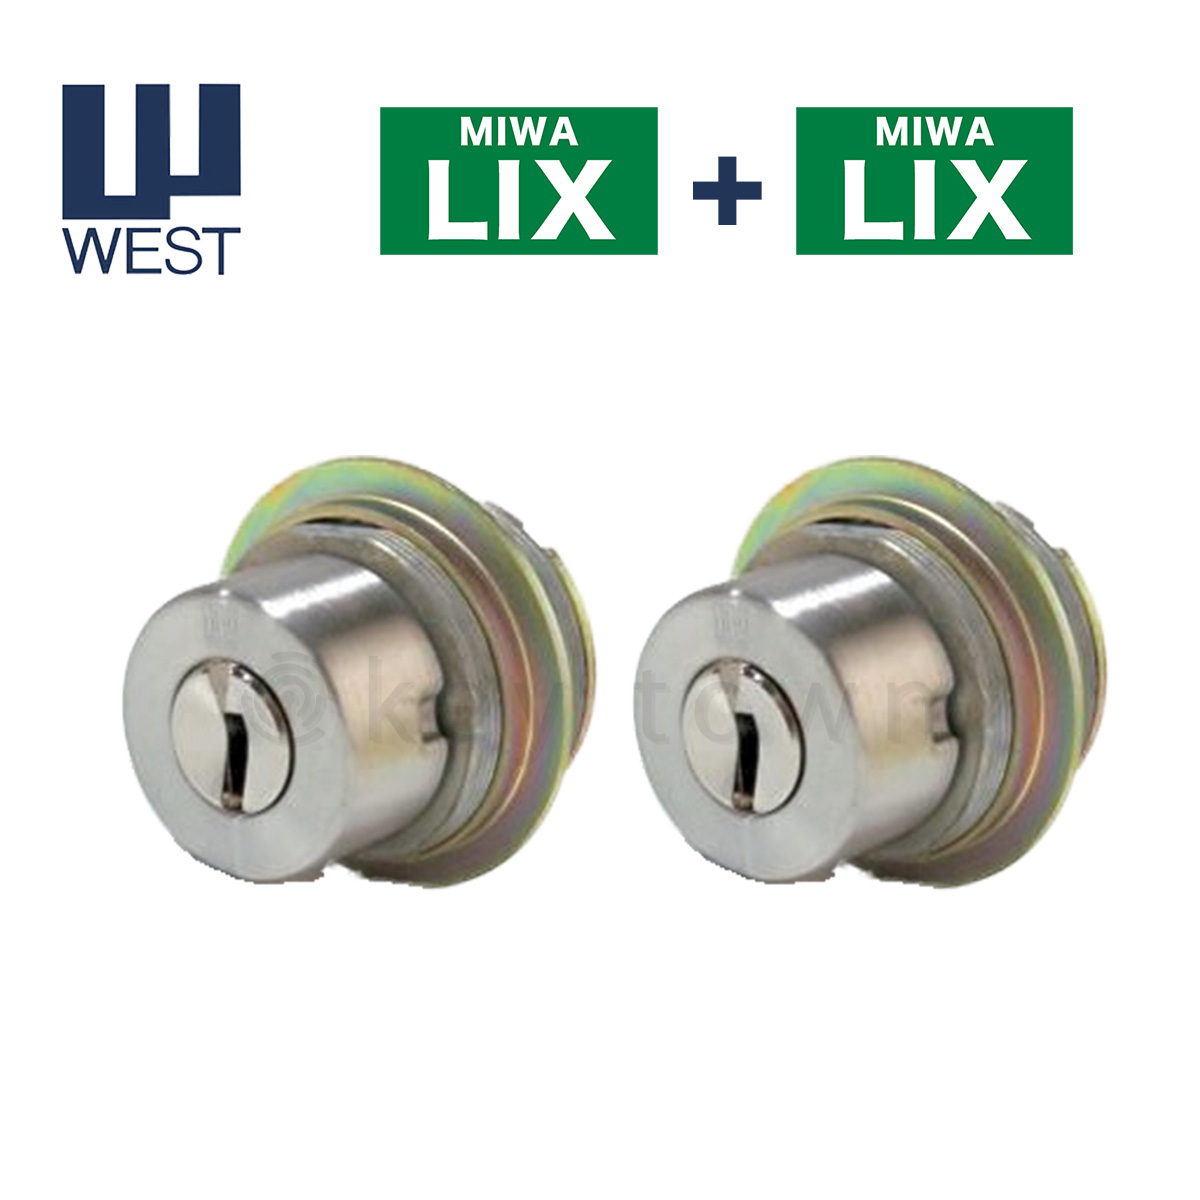 WESTリプレイスシリンダー916 MIWA LIX LSP交換用 2個同一キー - 1